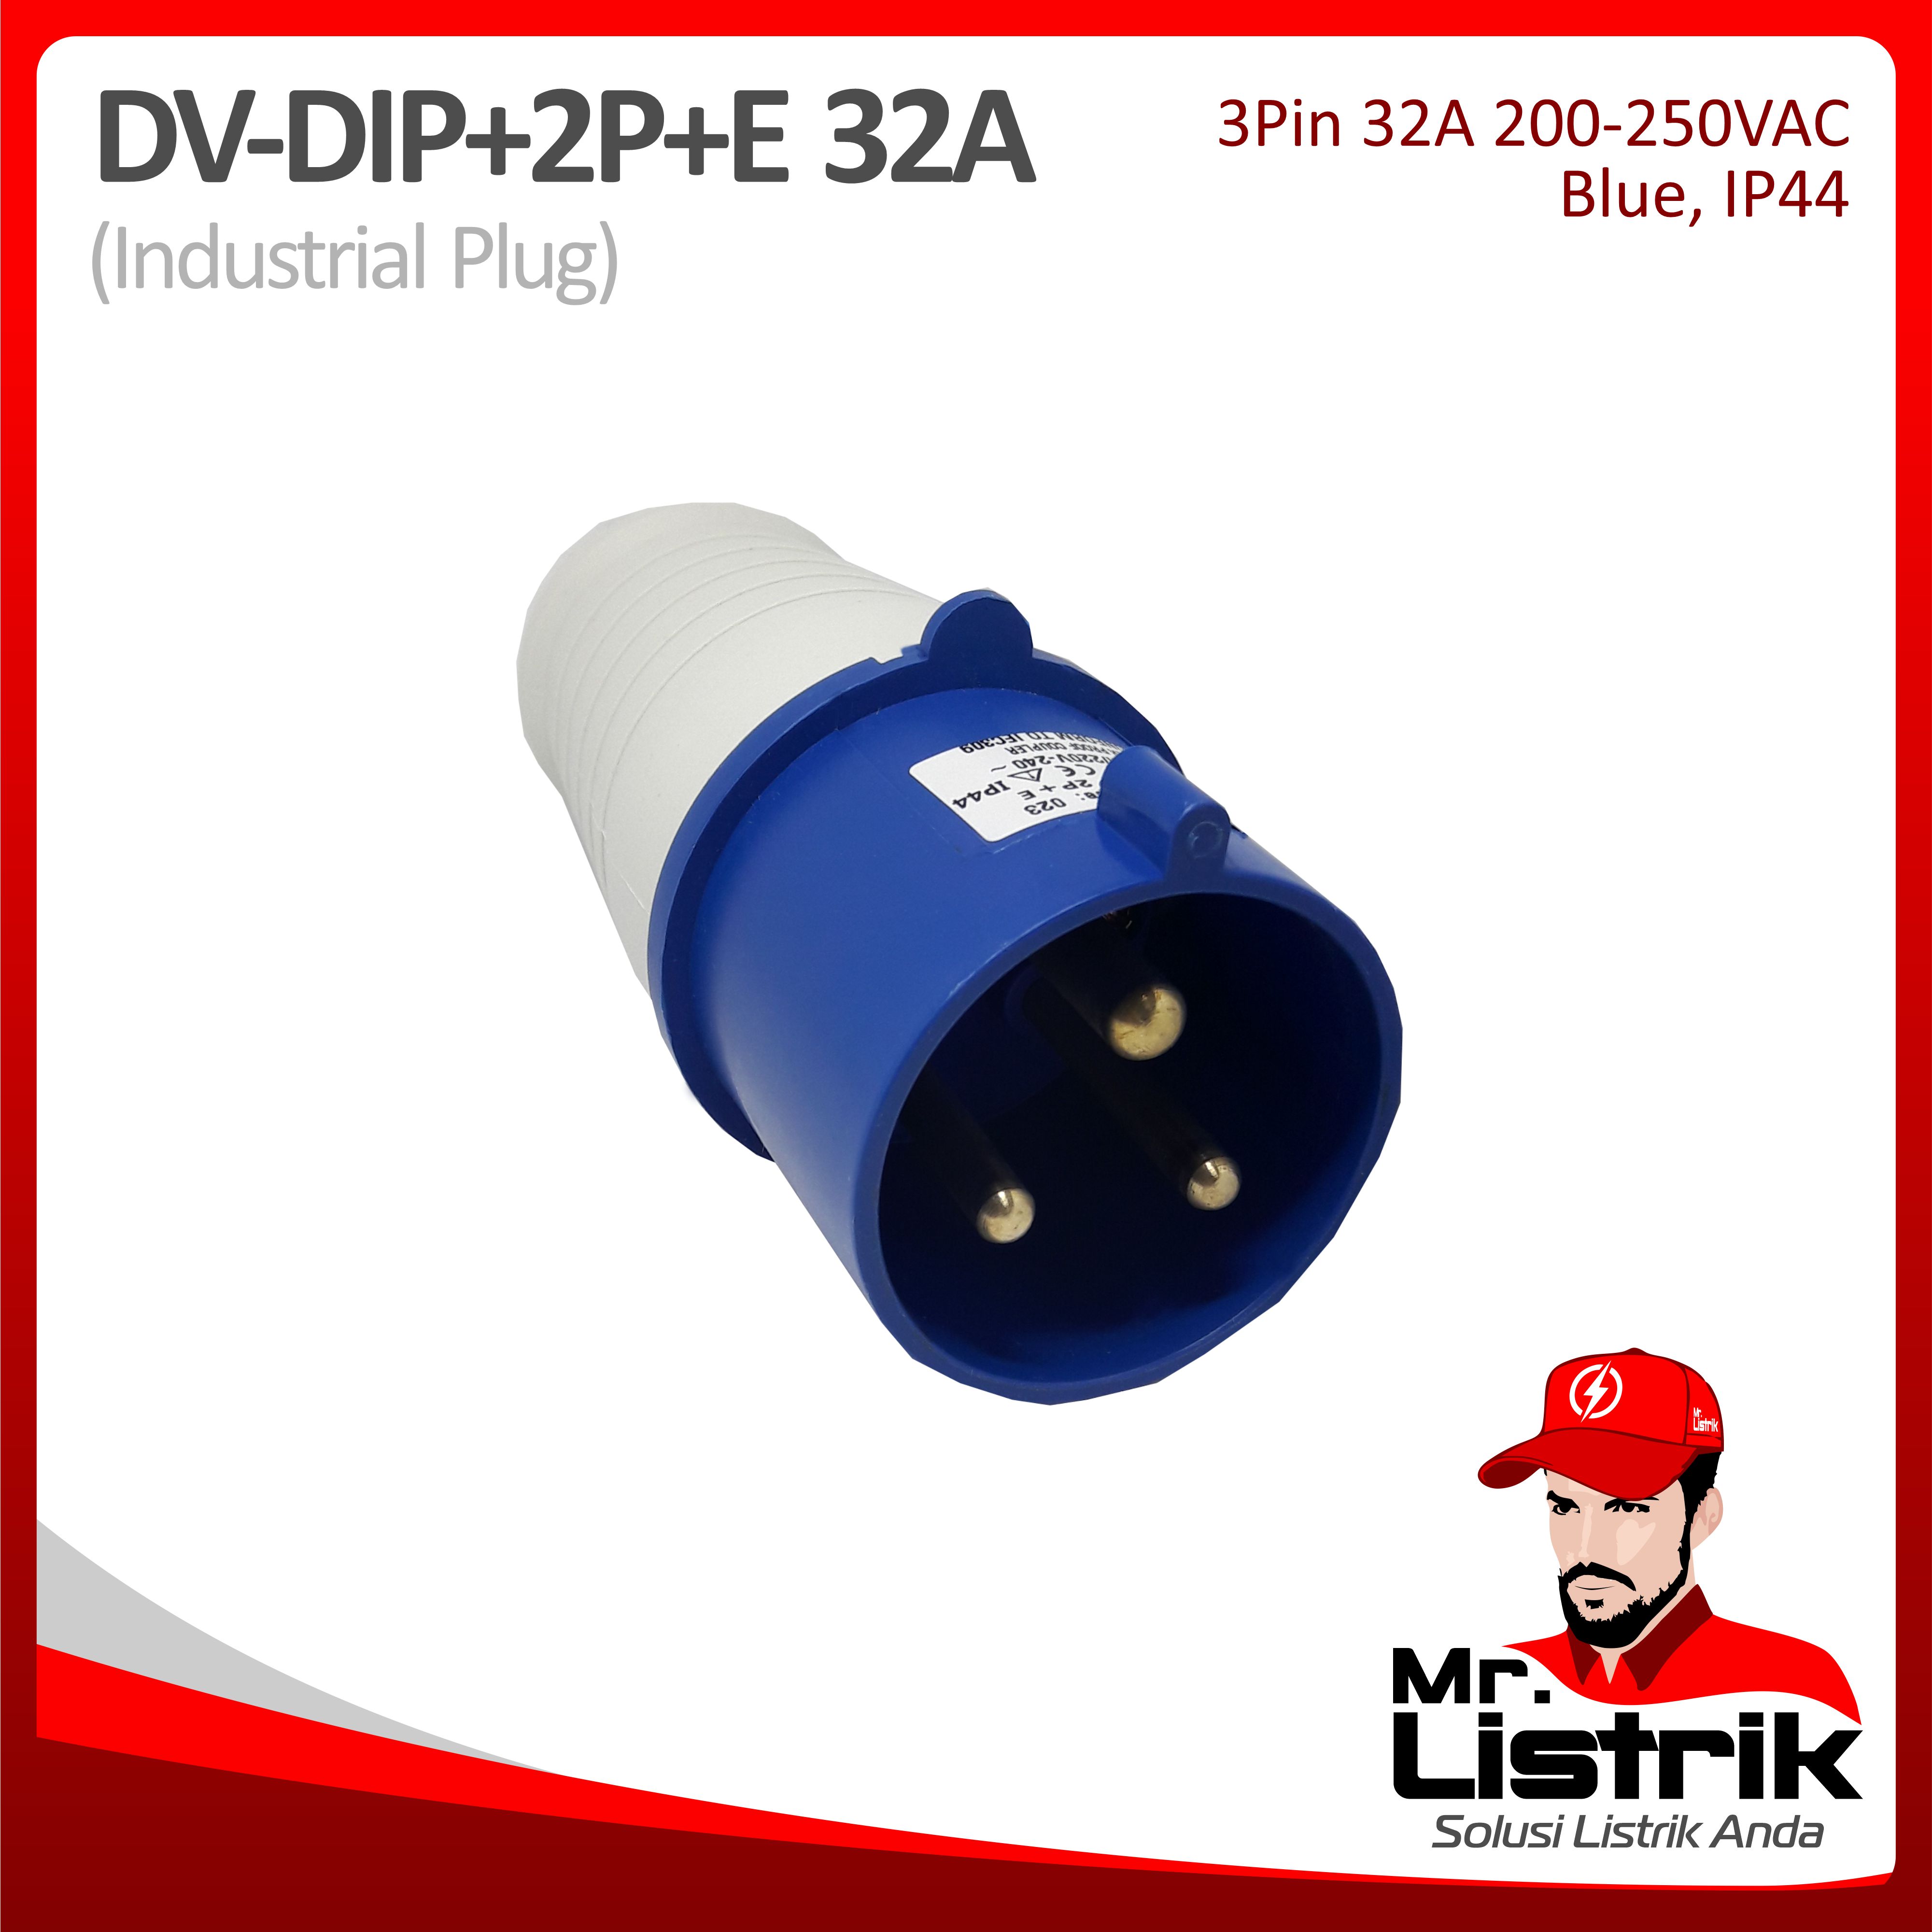 Industrial Plug 3 Pin 32A DV DIP-2P+E-32A